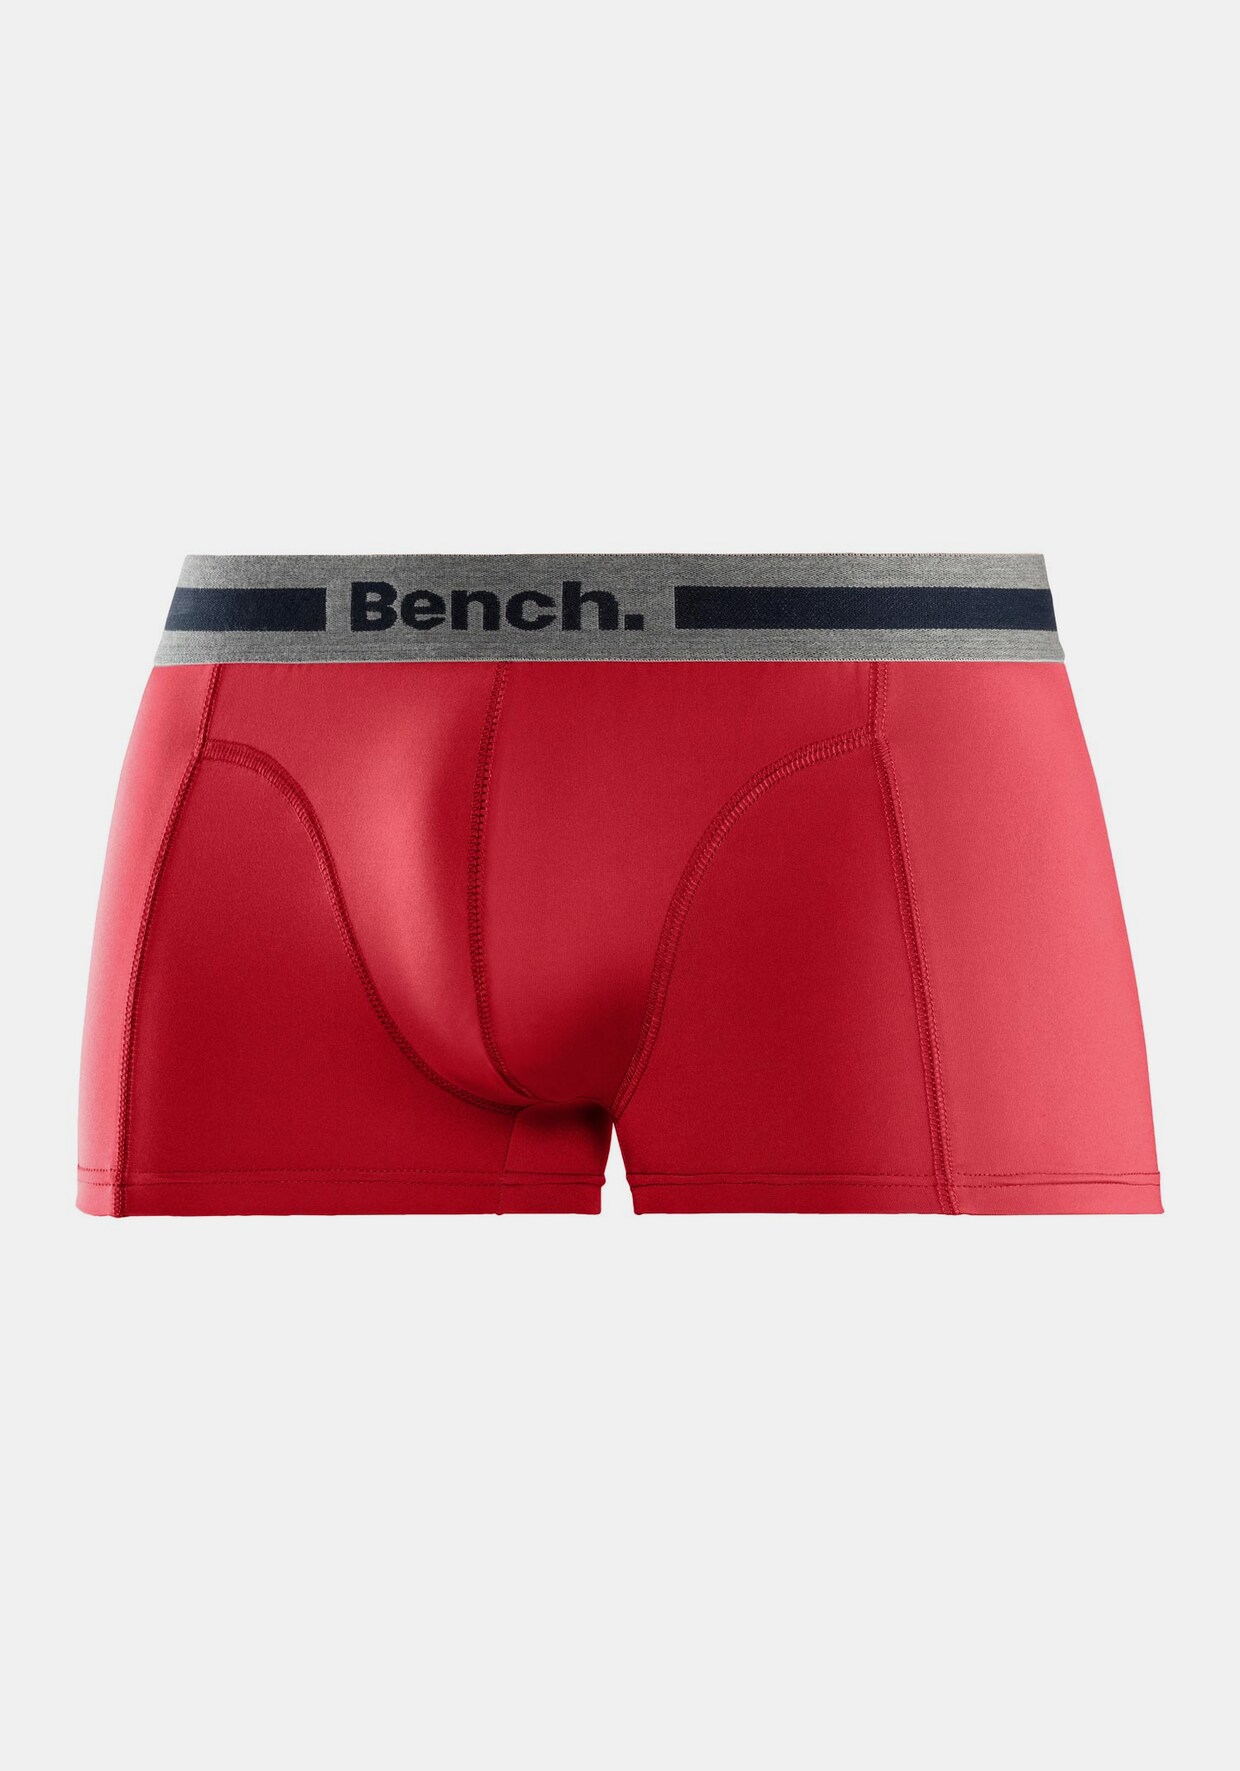 Bench. Functionele boxer - 1x rood + 1x grijs gemêleerd + 1x navy + 1x zwart